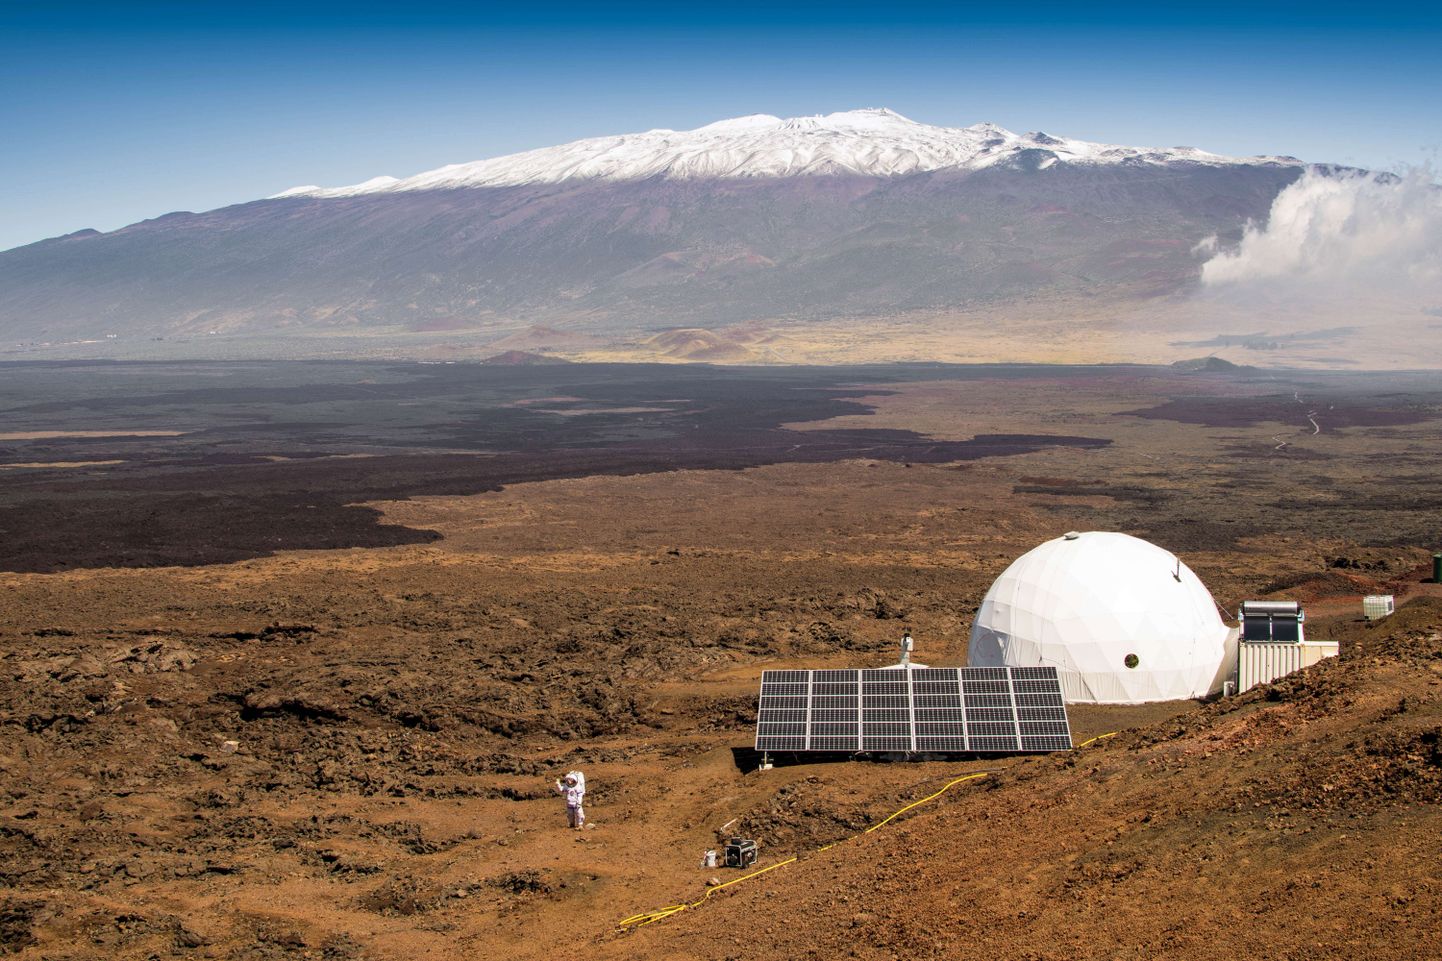 Majake Hawaii vulkaani jalamil pakub võimaluse aasta aega katsetada, kuidas mõjuks inimesele Marsil isolatsioonis elamine.